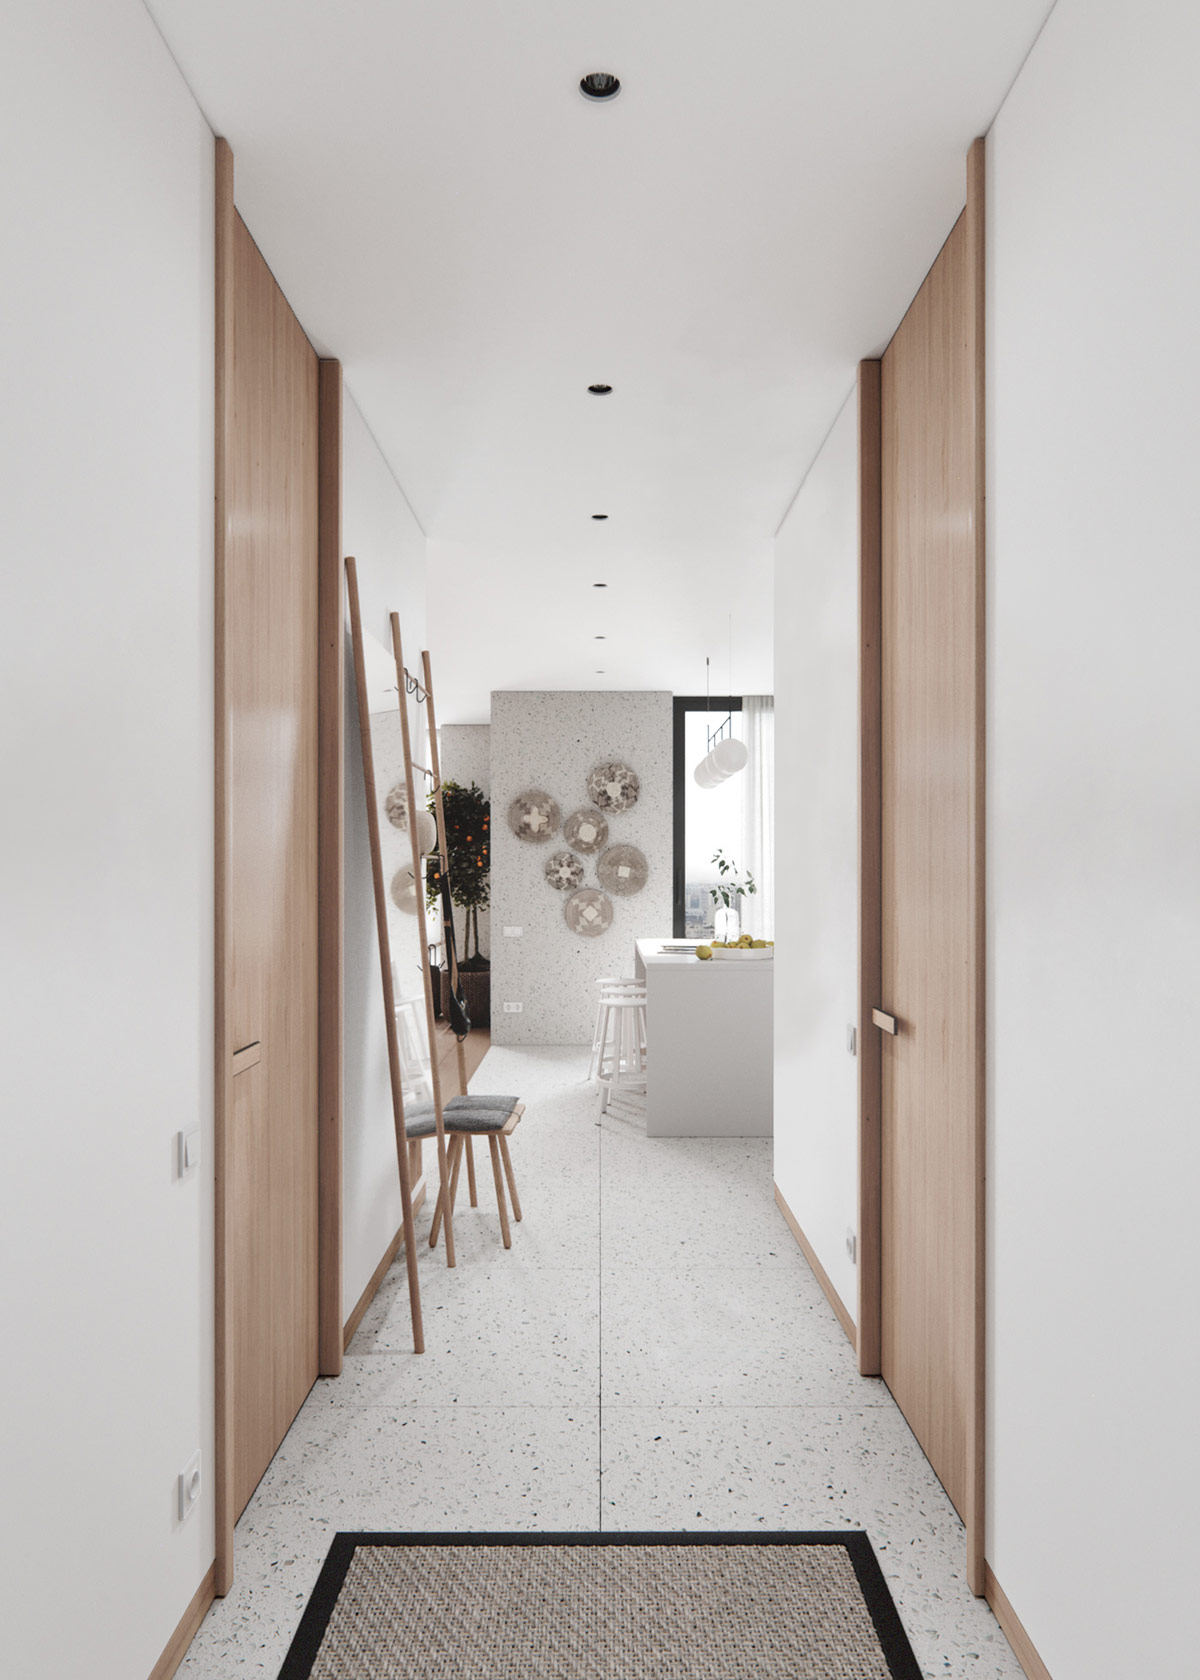 Bức tường trang trí bằng phụ kiện đan lát hình tròn, đánh dấu sự chuyển tiếp từ phòng khách sang phòng bếp và tạo sự bắt mắt ngay từ hành lang nhìn vào phía trong.